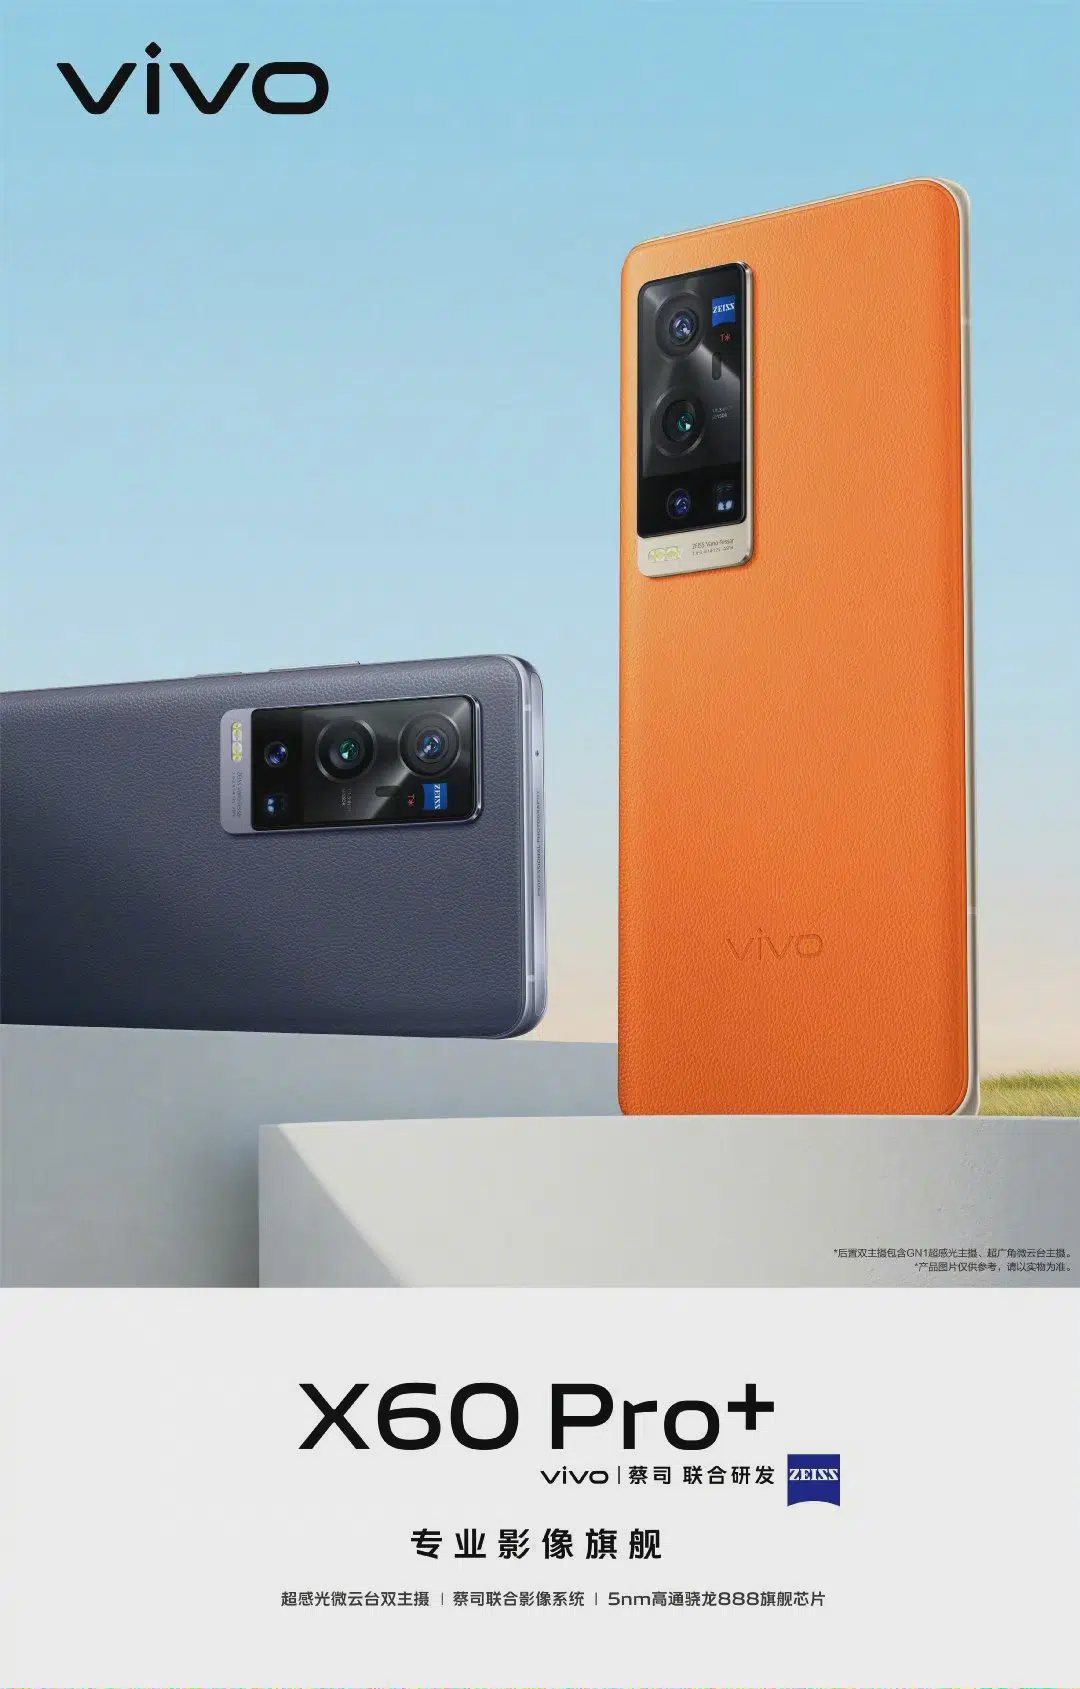 Vivo X60 Pro+ ra mắt
với Snapdragon 888, cụm 4 camera cực khủng, màn hình 120Hz,
sạc nhanh 55W, giá từ 17.8 triệu đồng